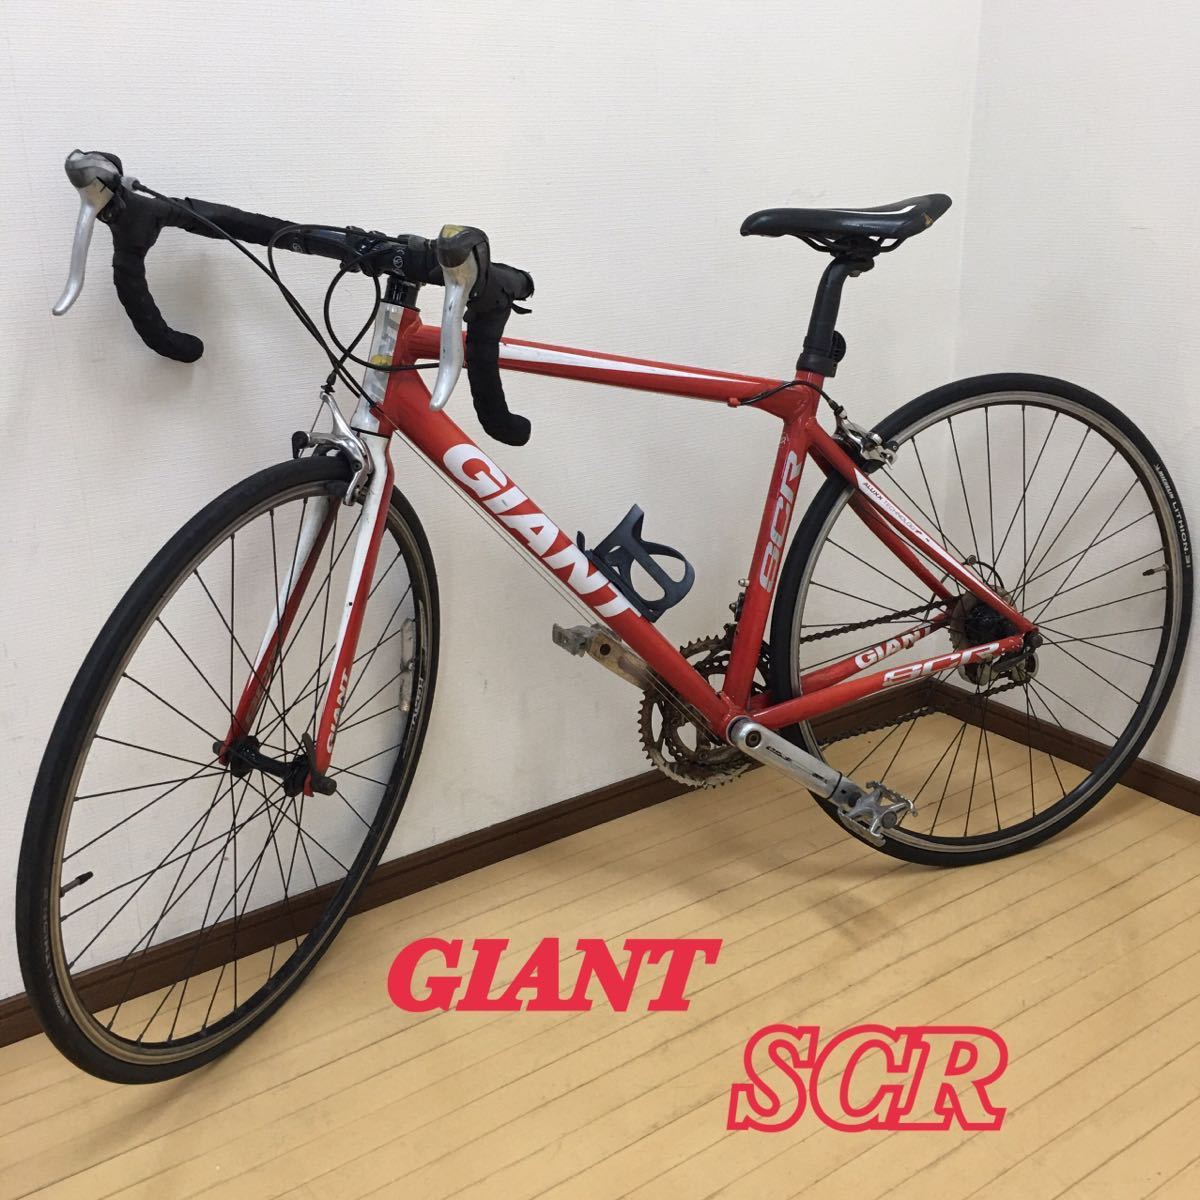 SU GIANT ジャイアント ロードバイク SCR Sサイズ 465mm 赤×白 レッド